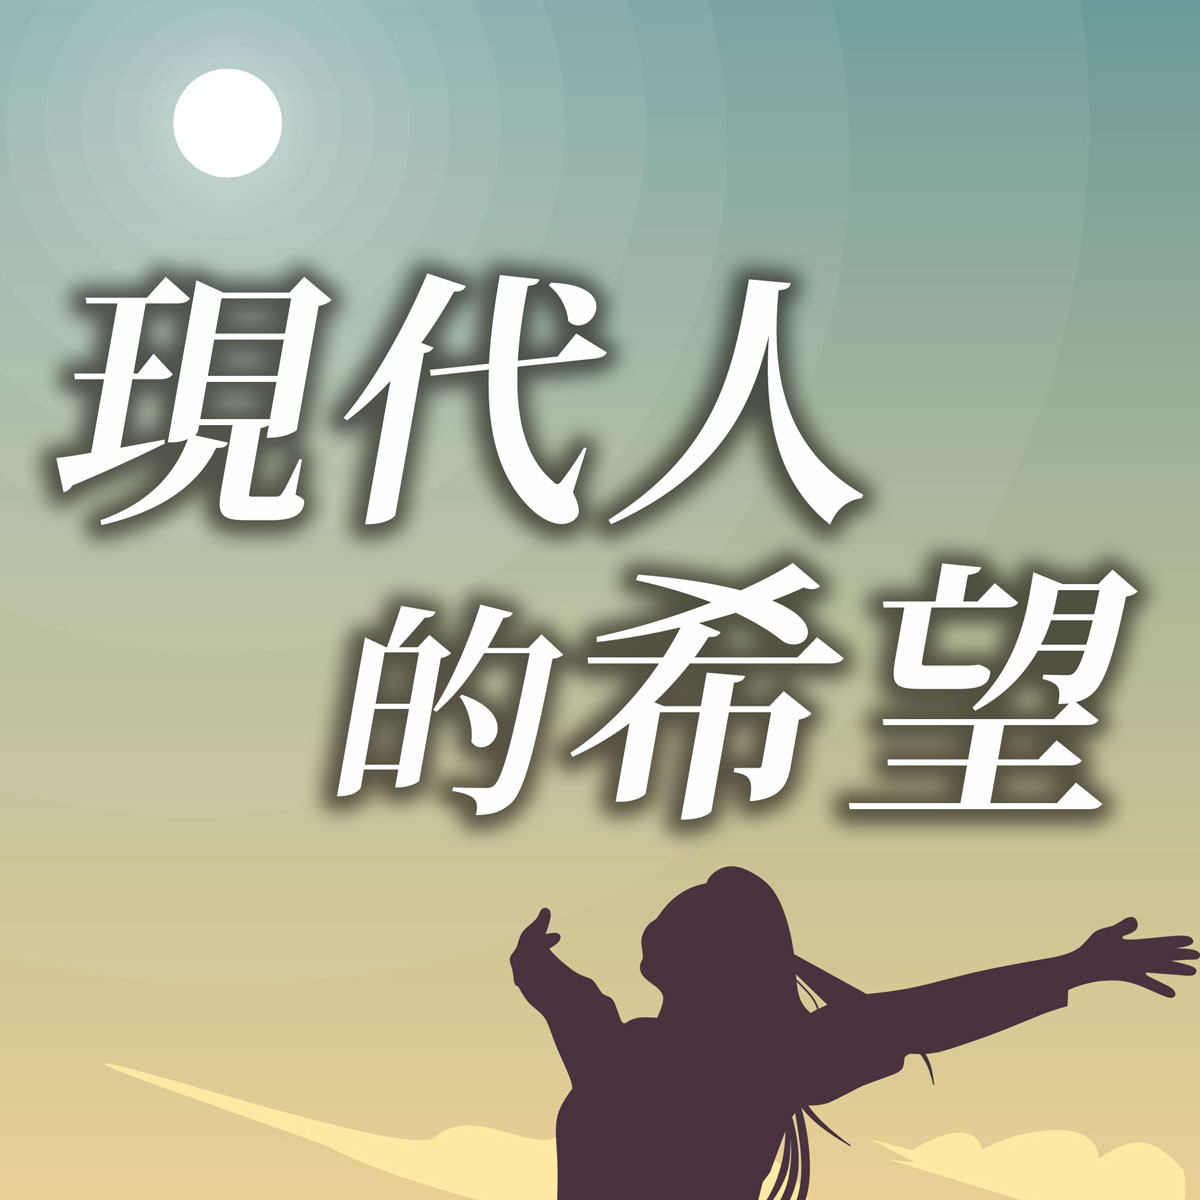 現代人的希望 - 江傳道系列(五)富足的人生-你要痊癒嗎？封面圖